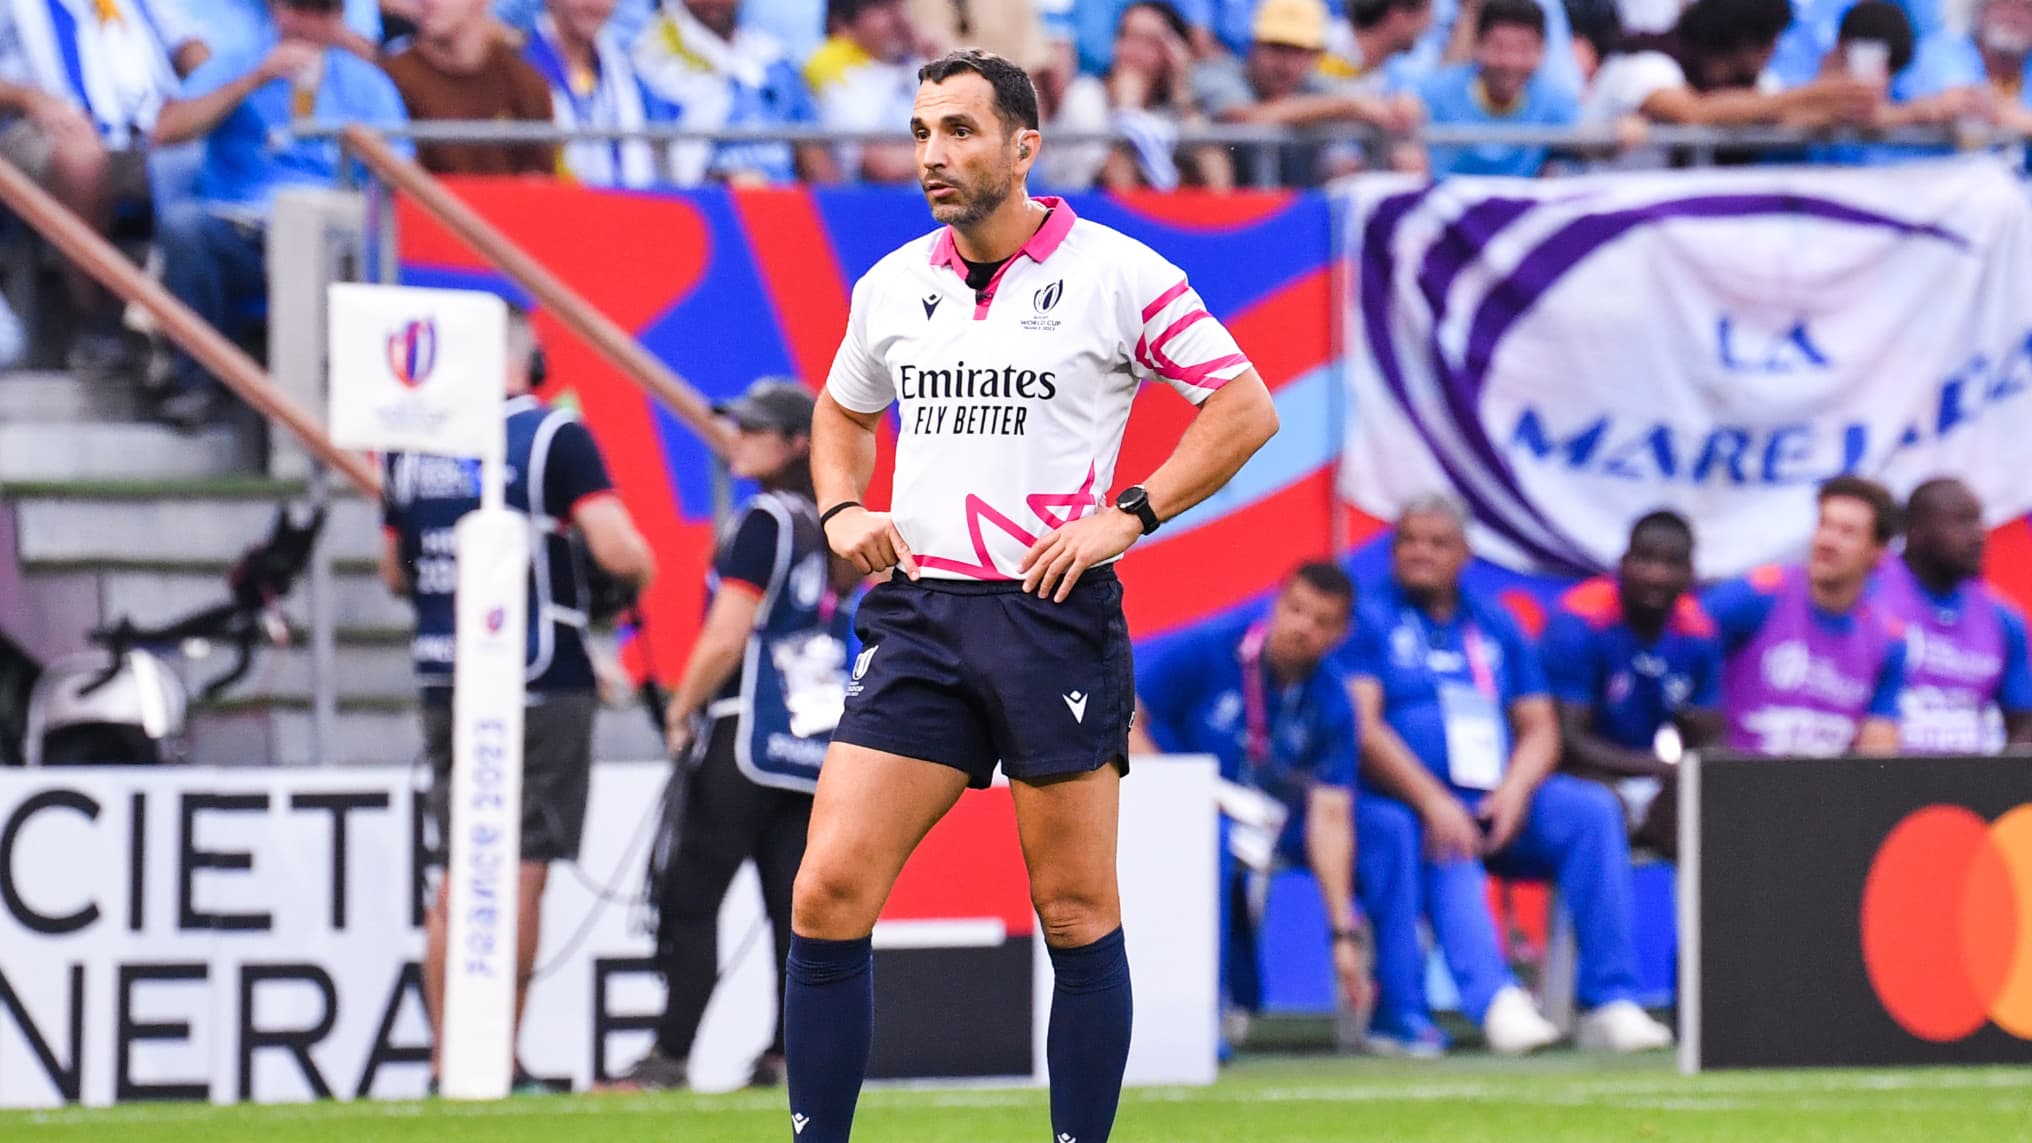 L’arbitro francese scelto per il quarto anglo-fiji non è proprio di gusto per gli inglesi